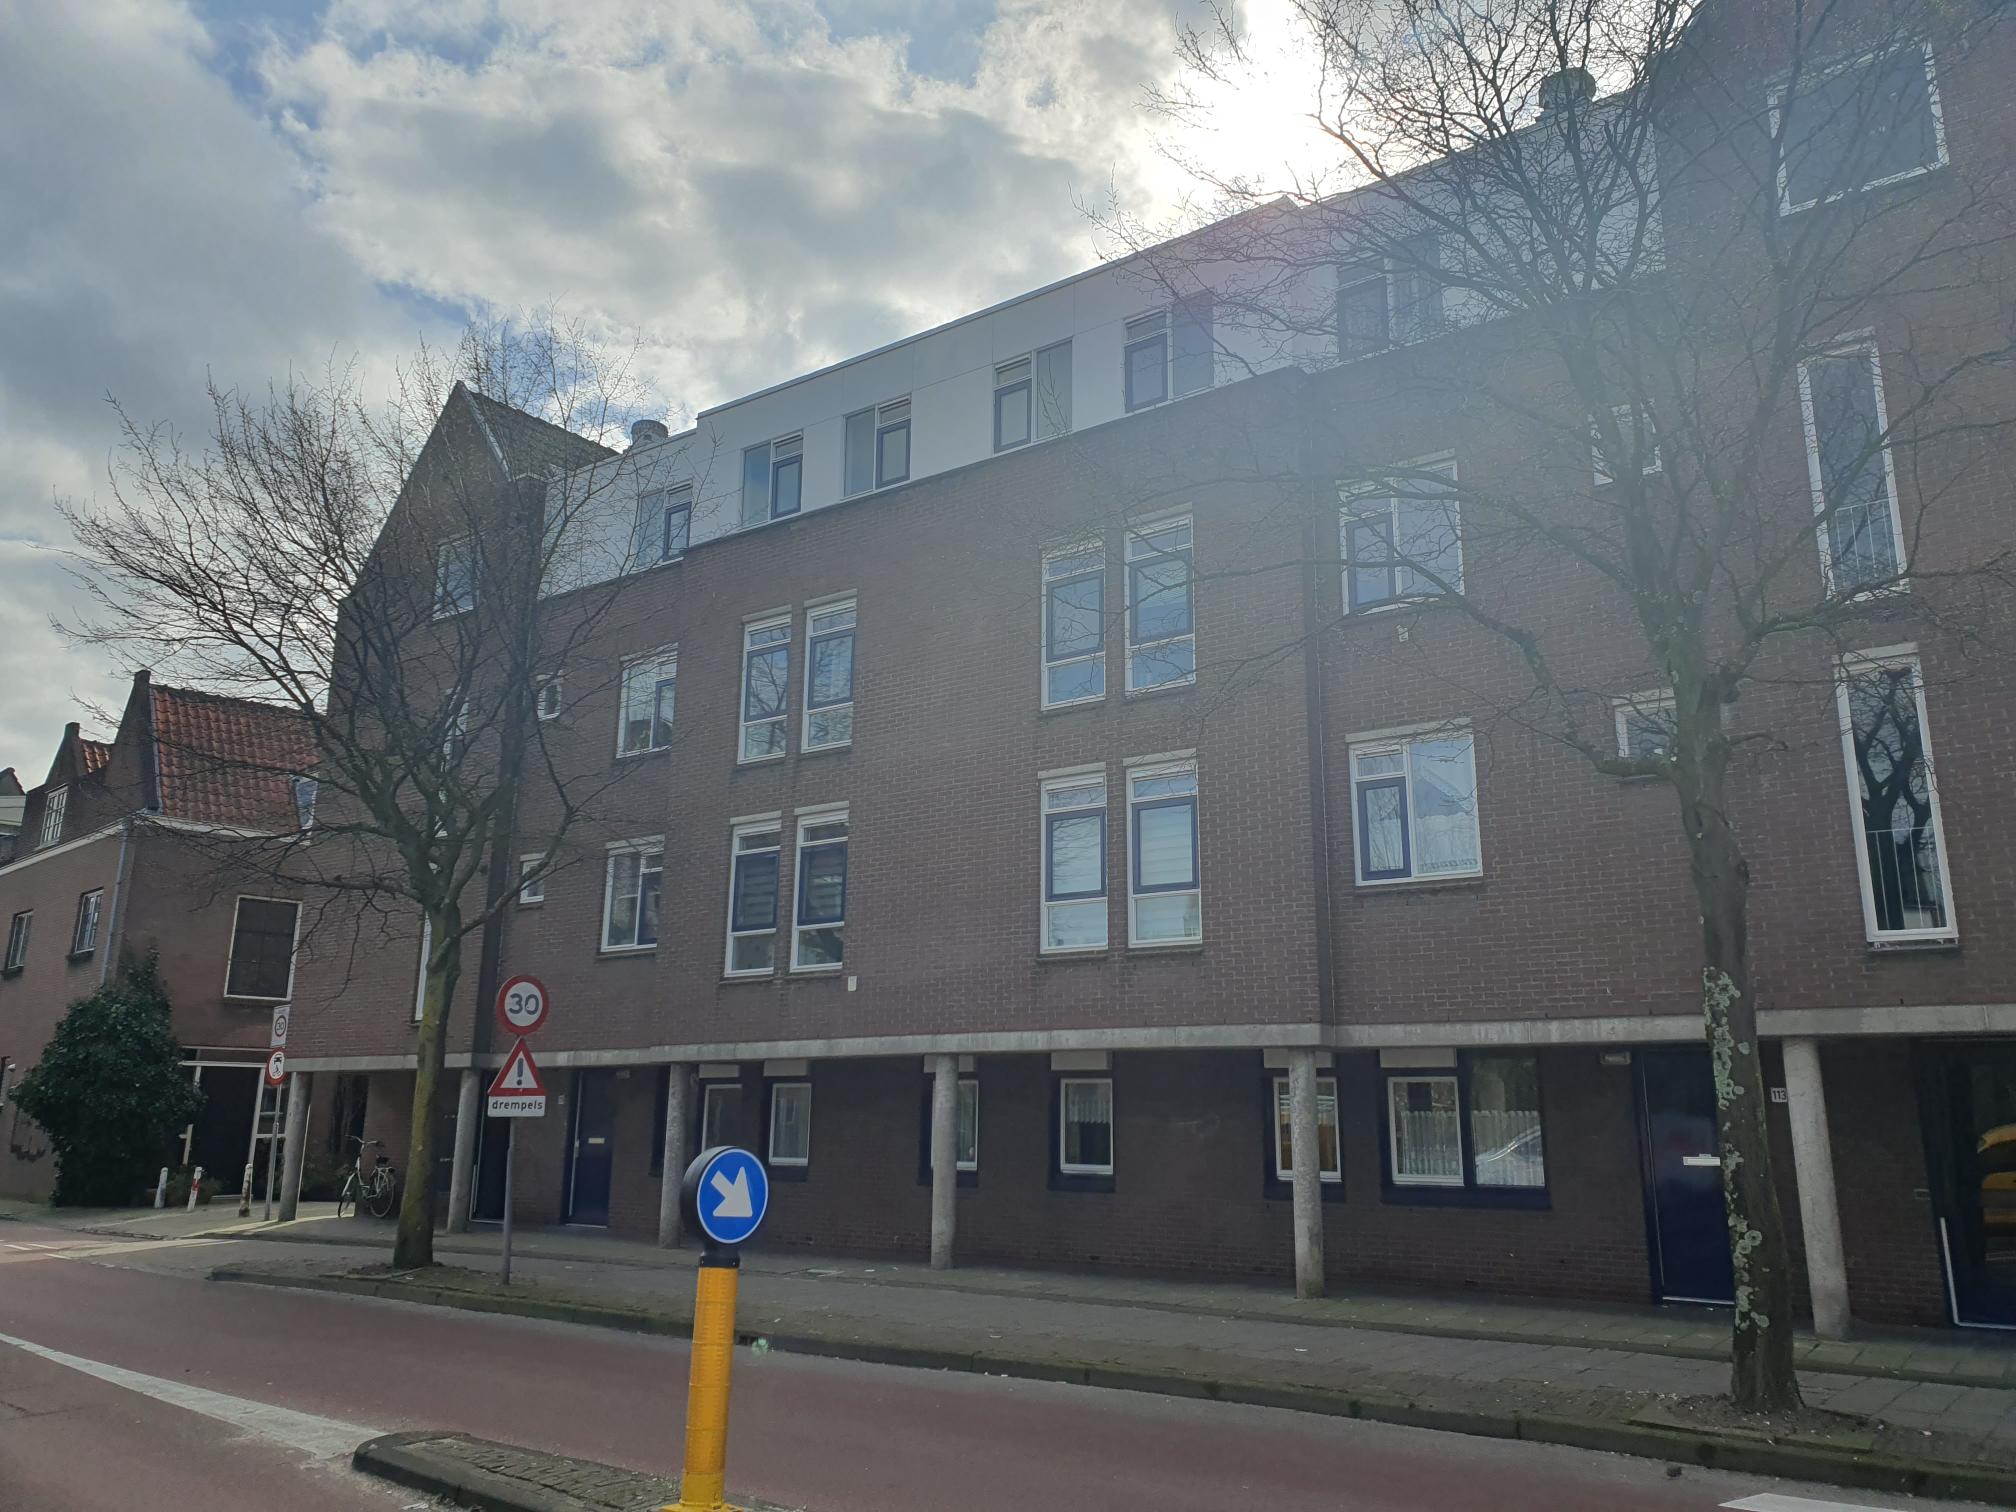 Ingenieur Driessenstraat 115, 2312 KZ Leiden, Nederland